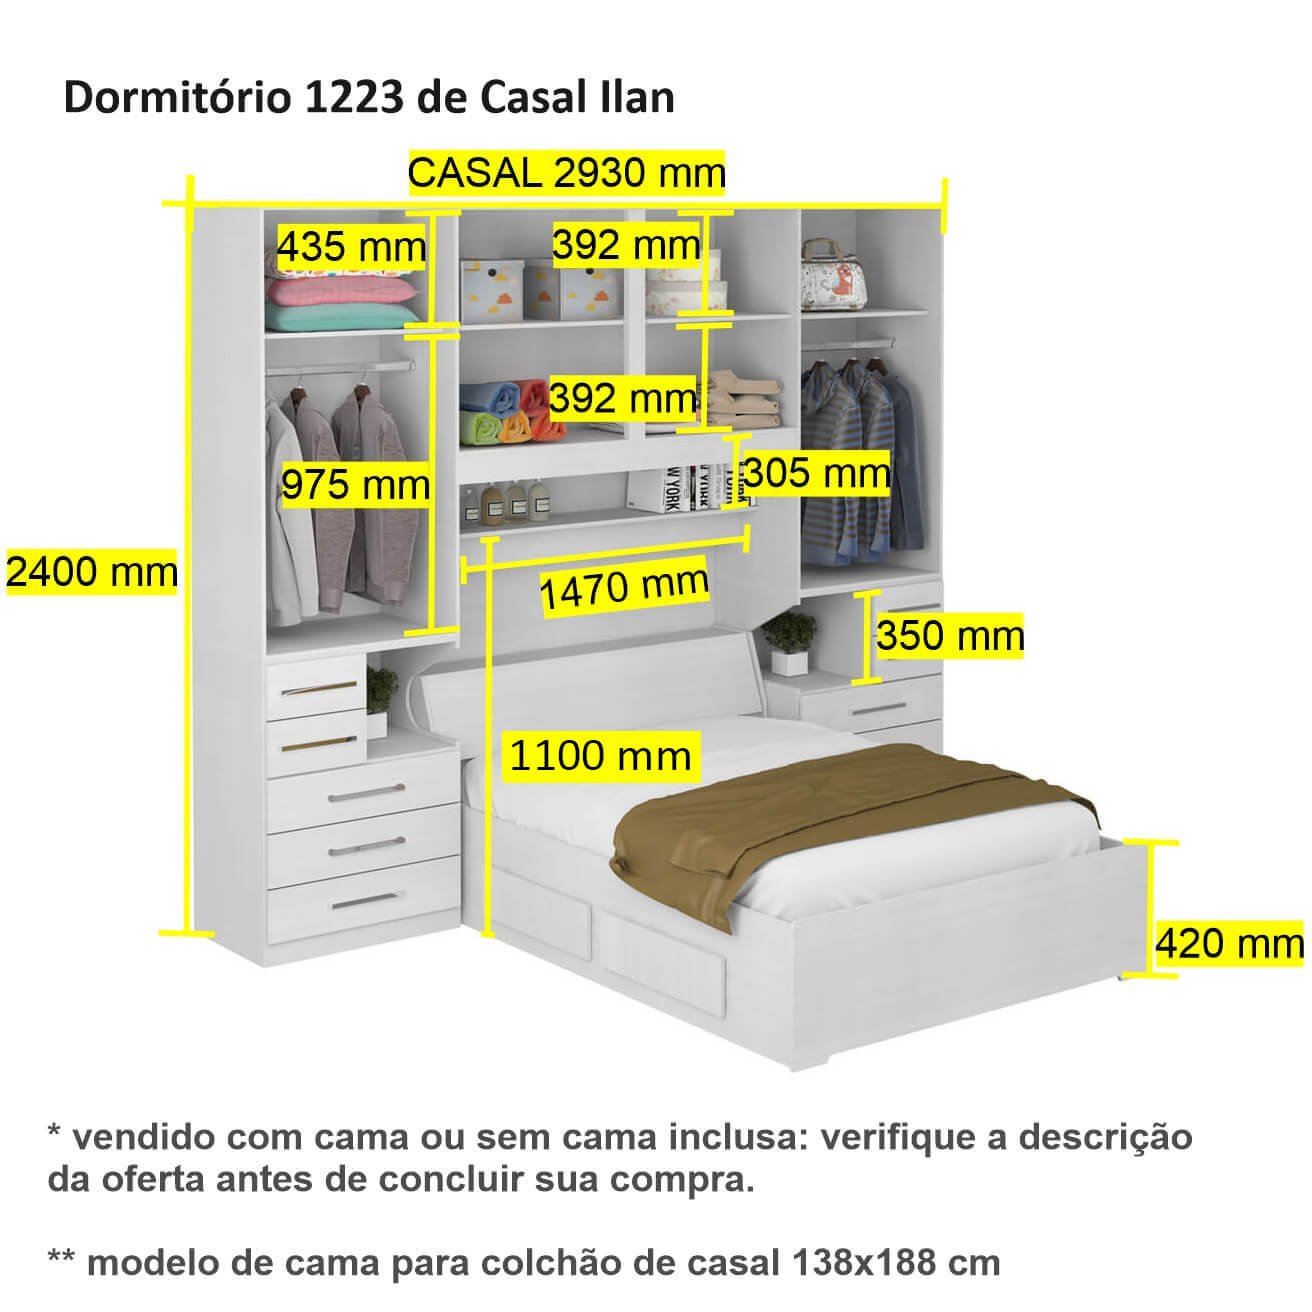 Dormitório de Casal sem Cama 1223s Carvalho Claro - 3